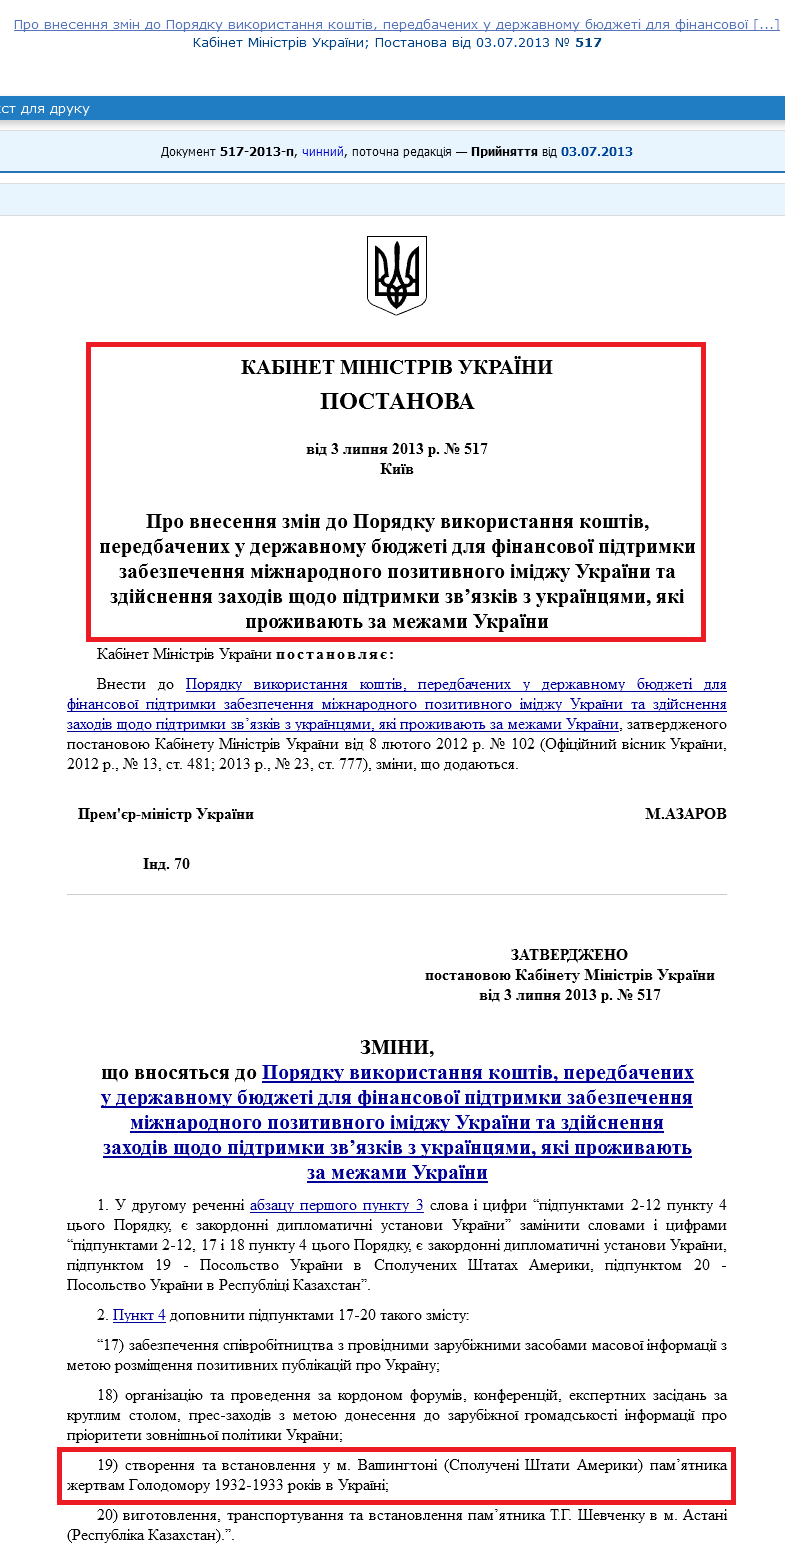 http://zakon2.rada.gov.ua/laws/show/517-2013-%D0%BF